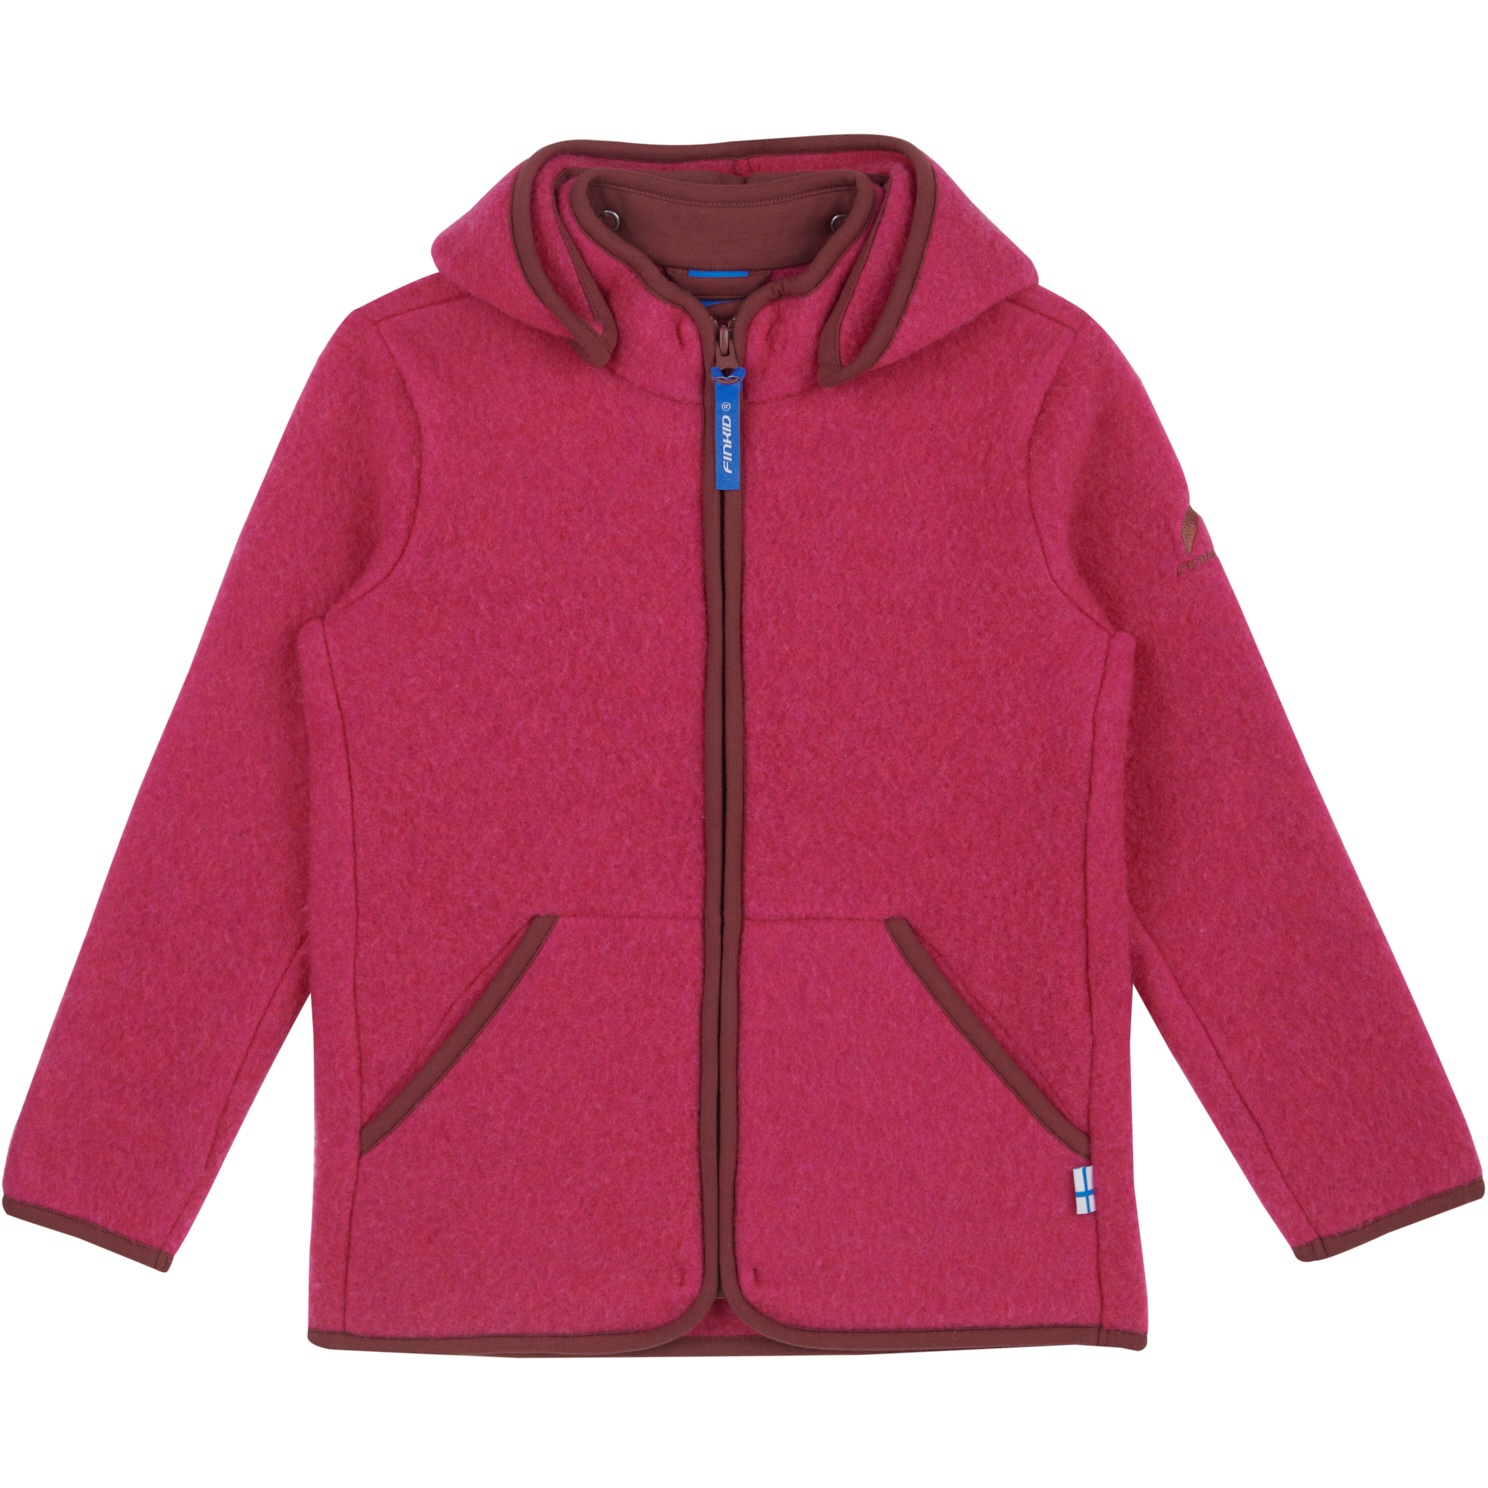 Finkid LUONTO WOOL wool fleece jacket - zip in inner jacket raspberry,  64,55 €